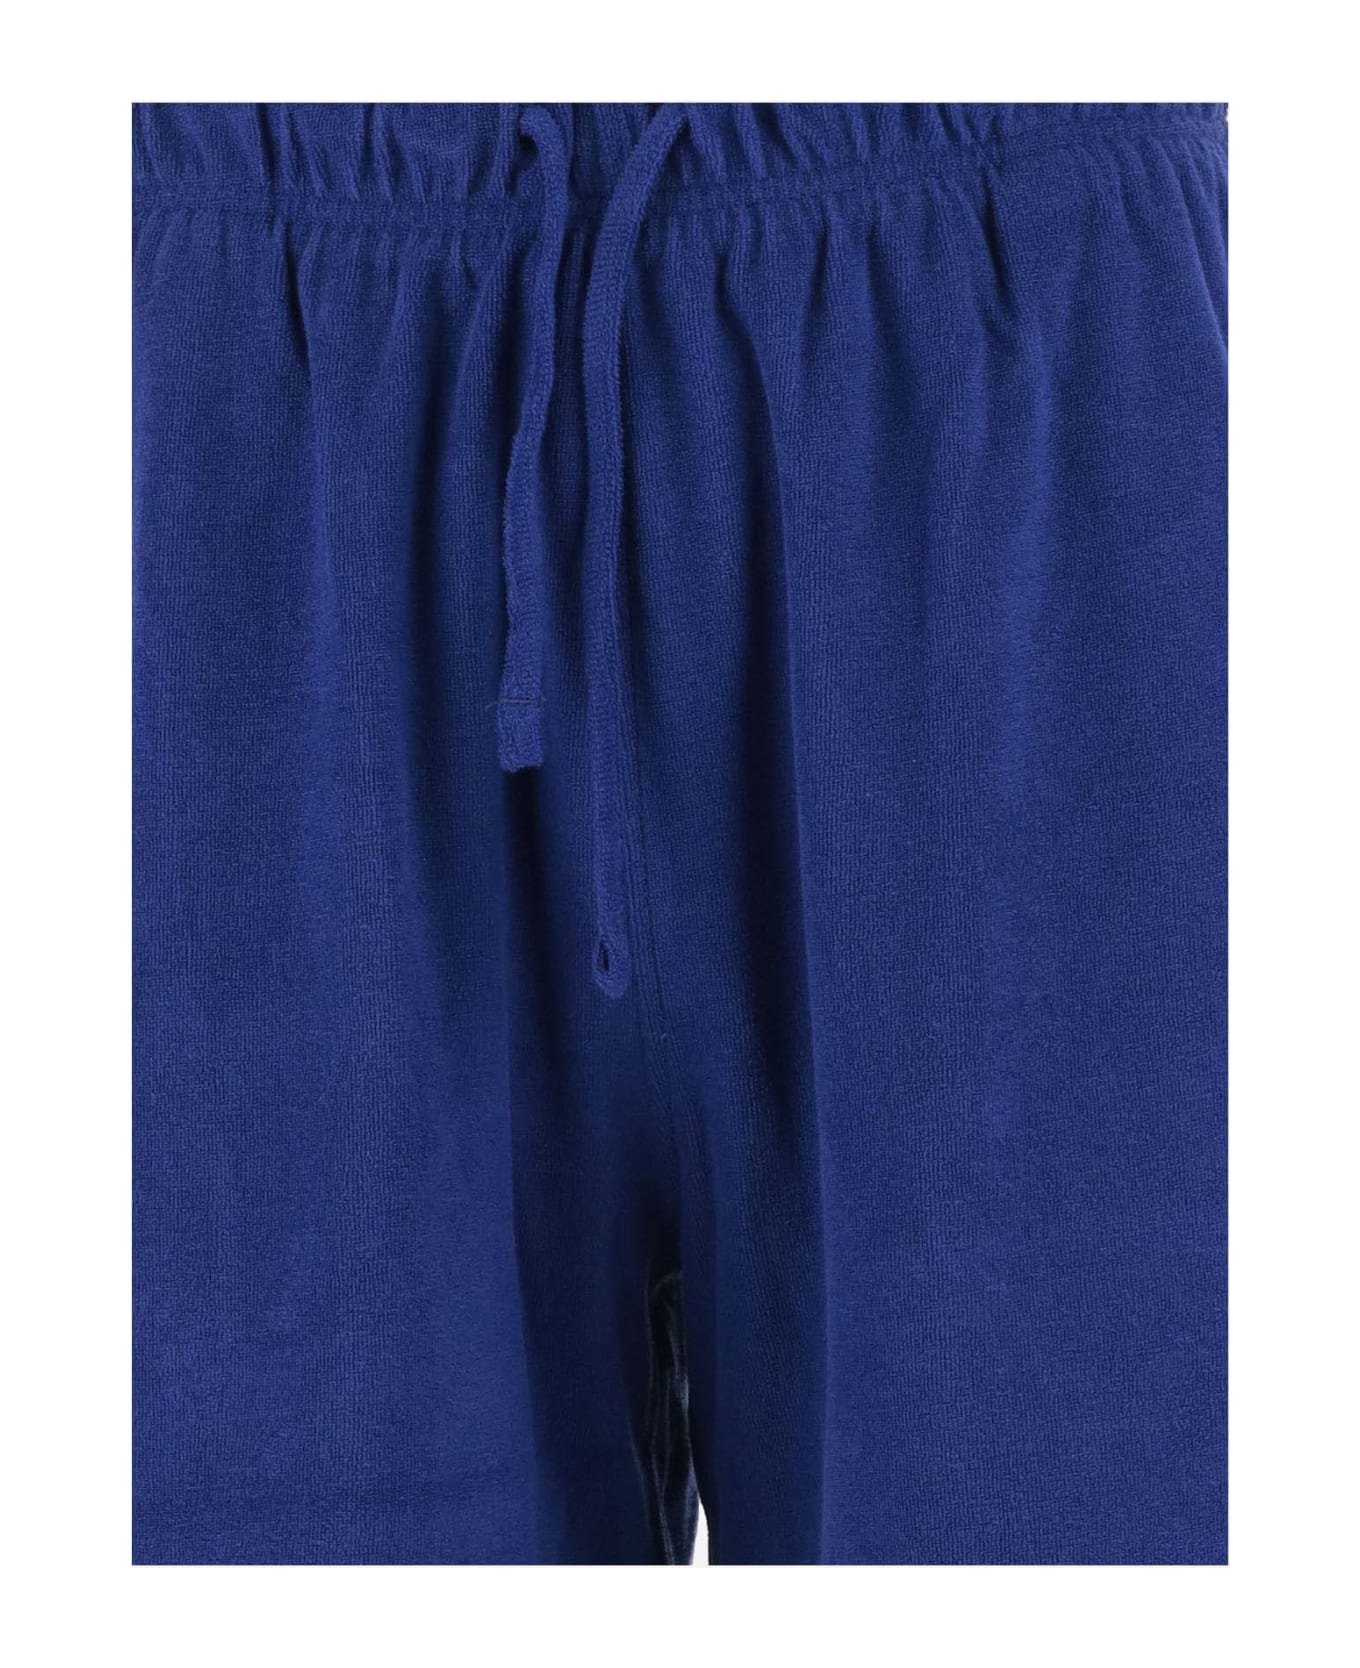 Burberry Cotton Terry Short Pants - Blue